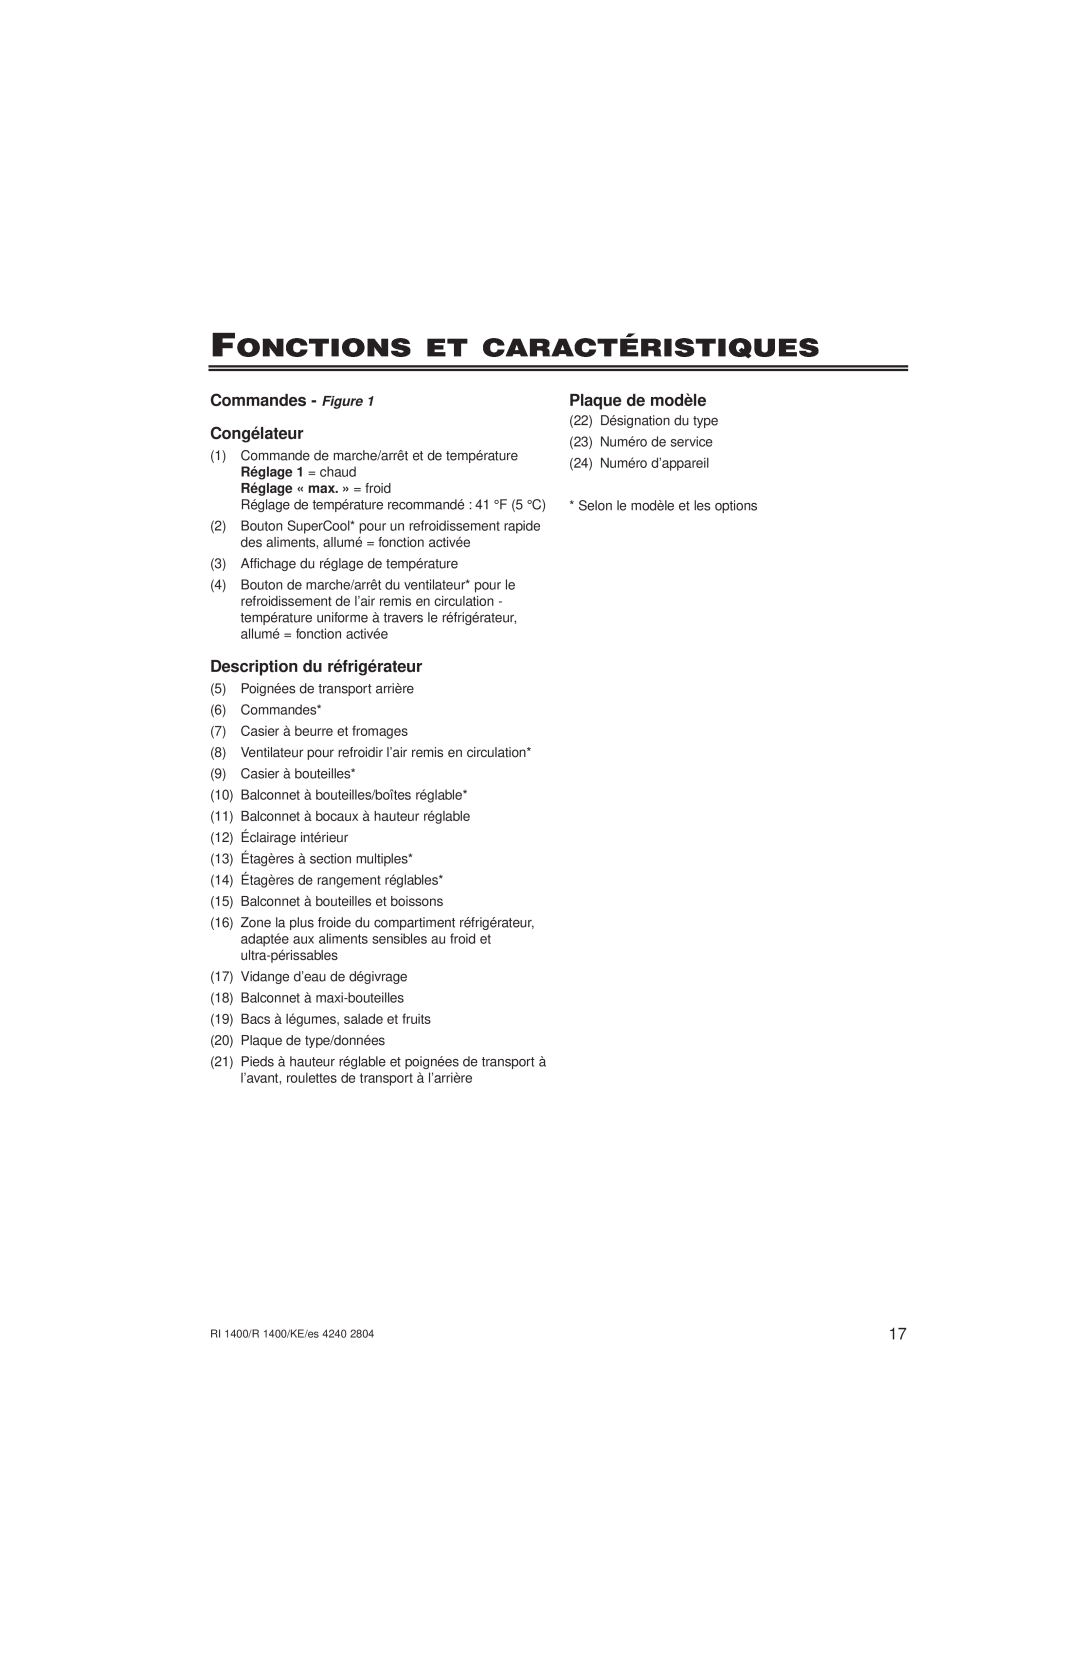 Liebherr RI1400, R1400 Fonctions Et Caractéristiques, Commandes - Figure Congélateur, Description du réfrigérateur 